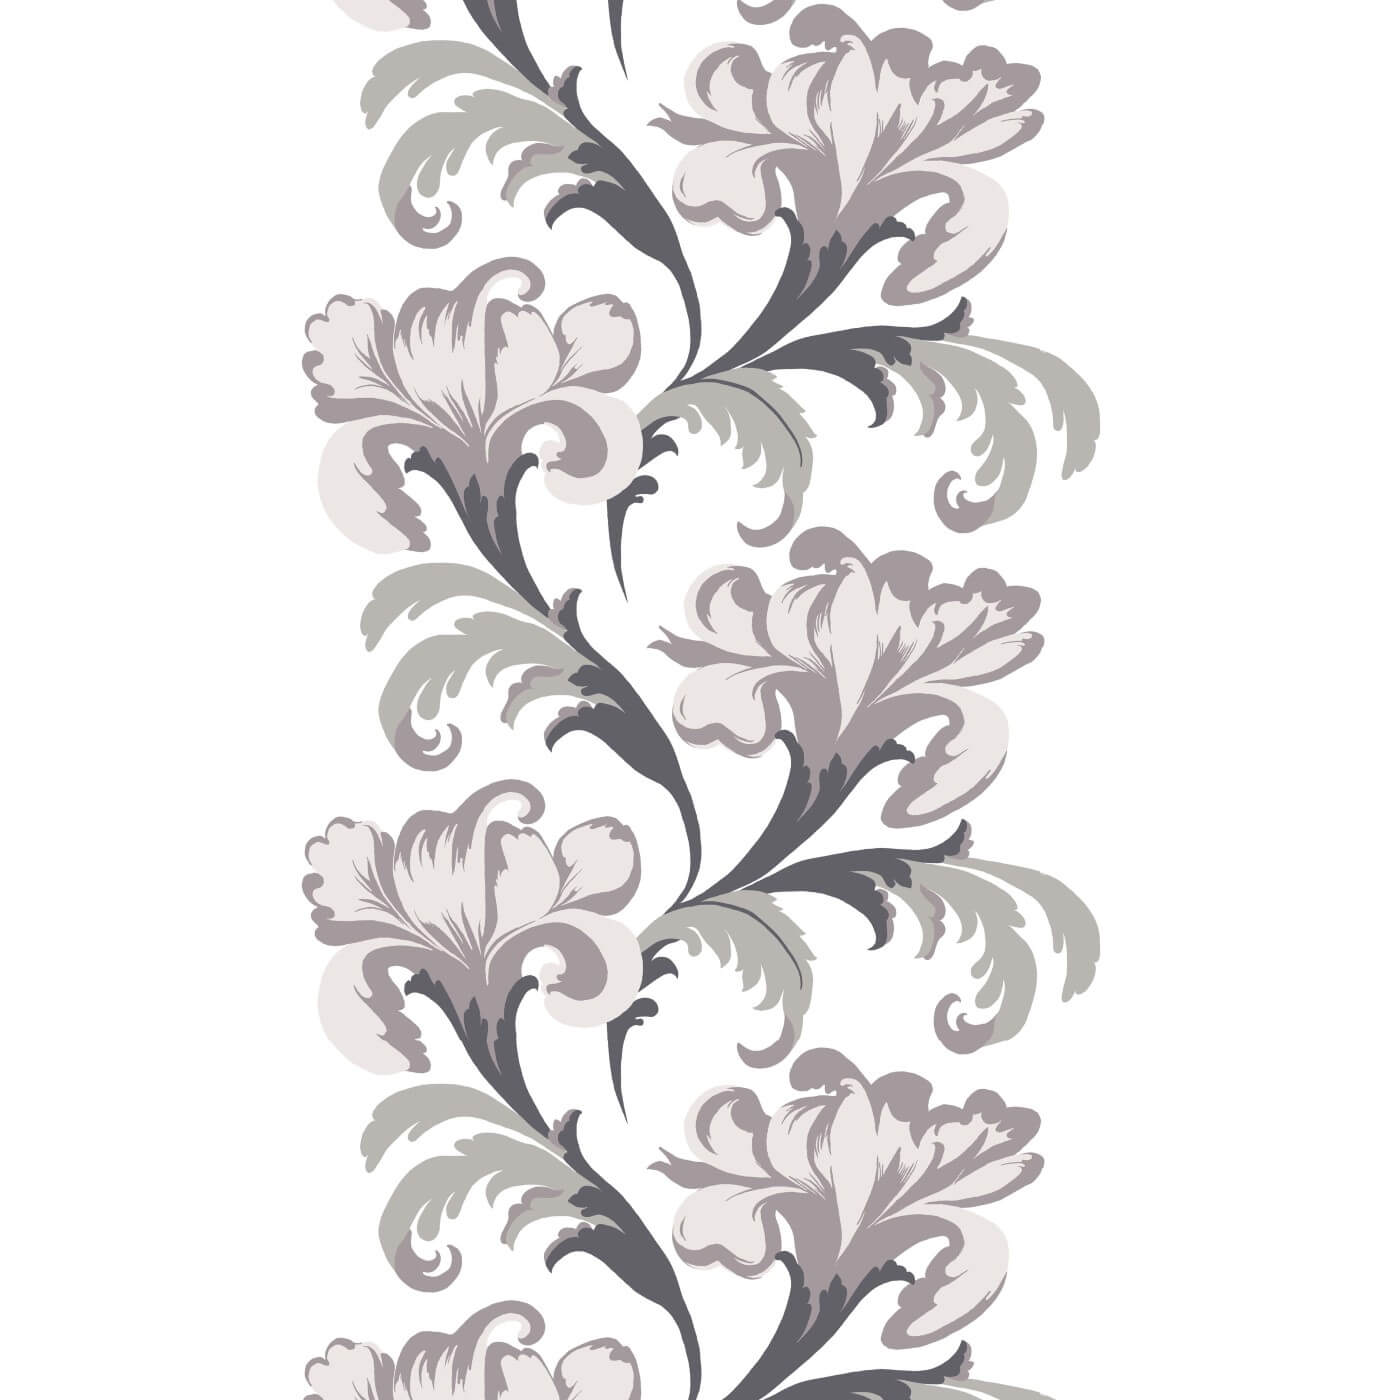 Eleganckie zasłony FANFAARI. Stylizowany duży wzór roślinny w tonacji szarej i zgaszonego pudrowego różu na białym tle